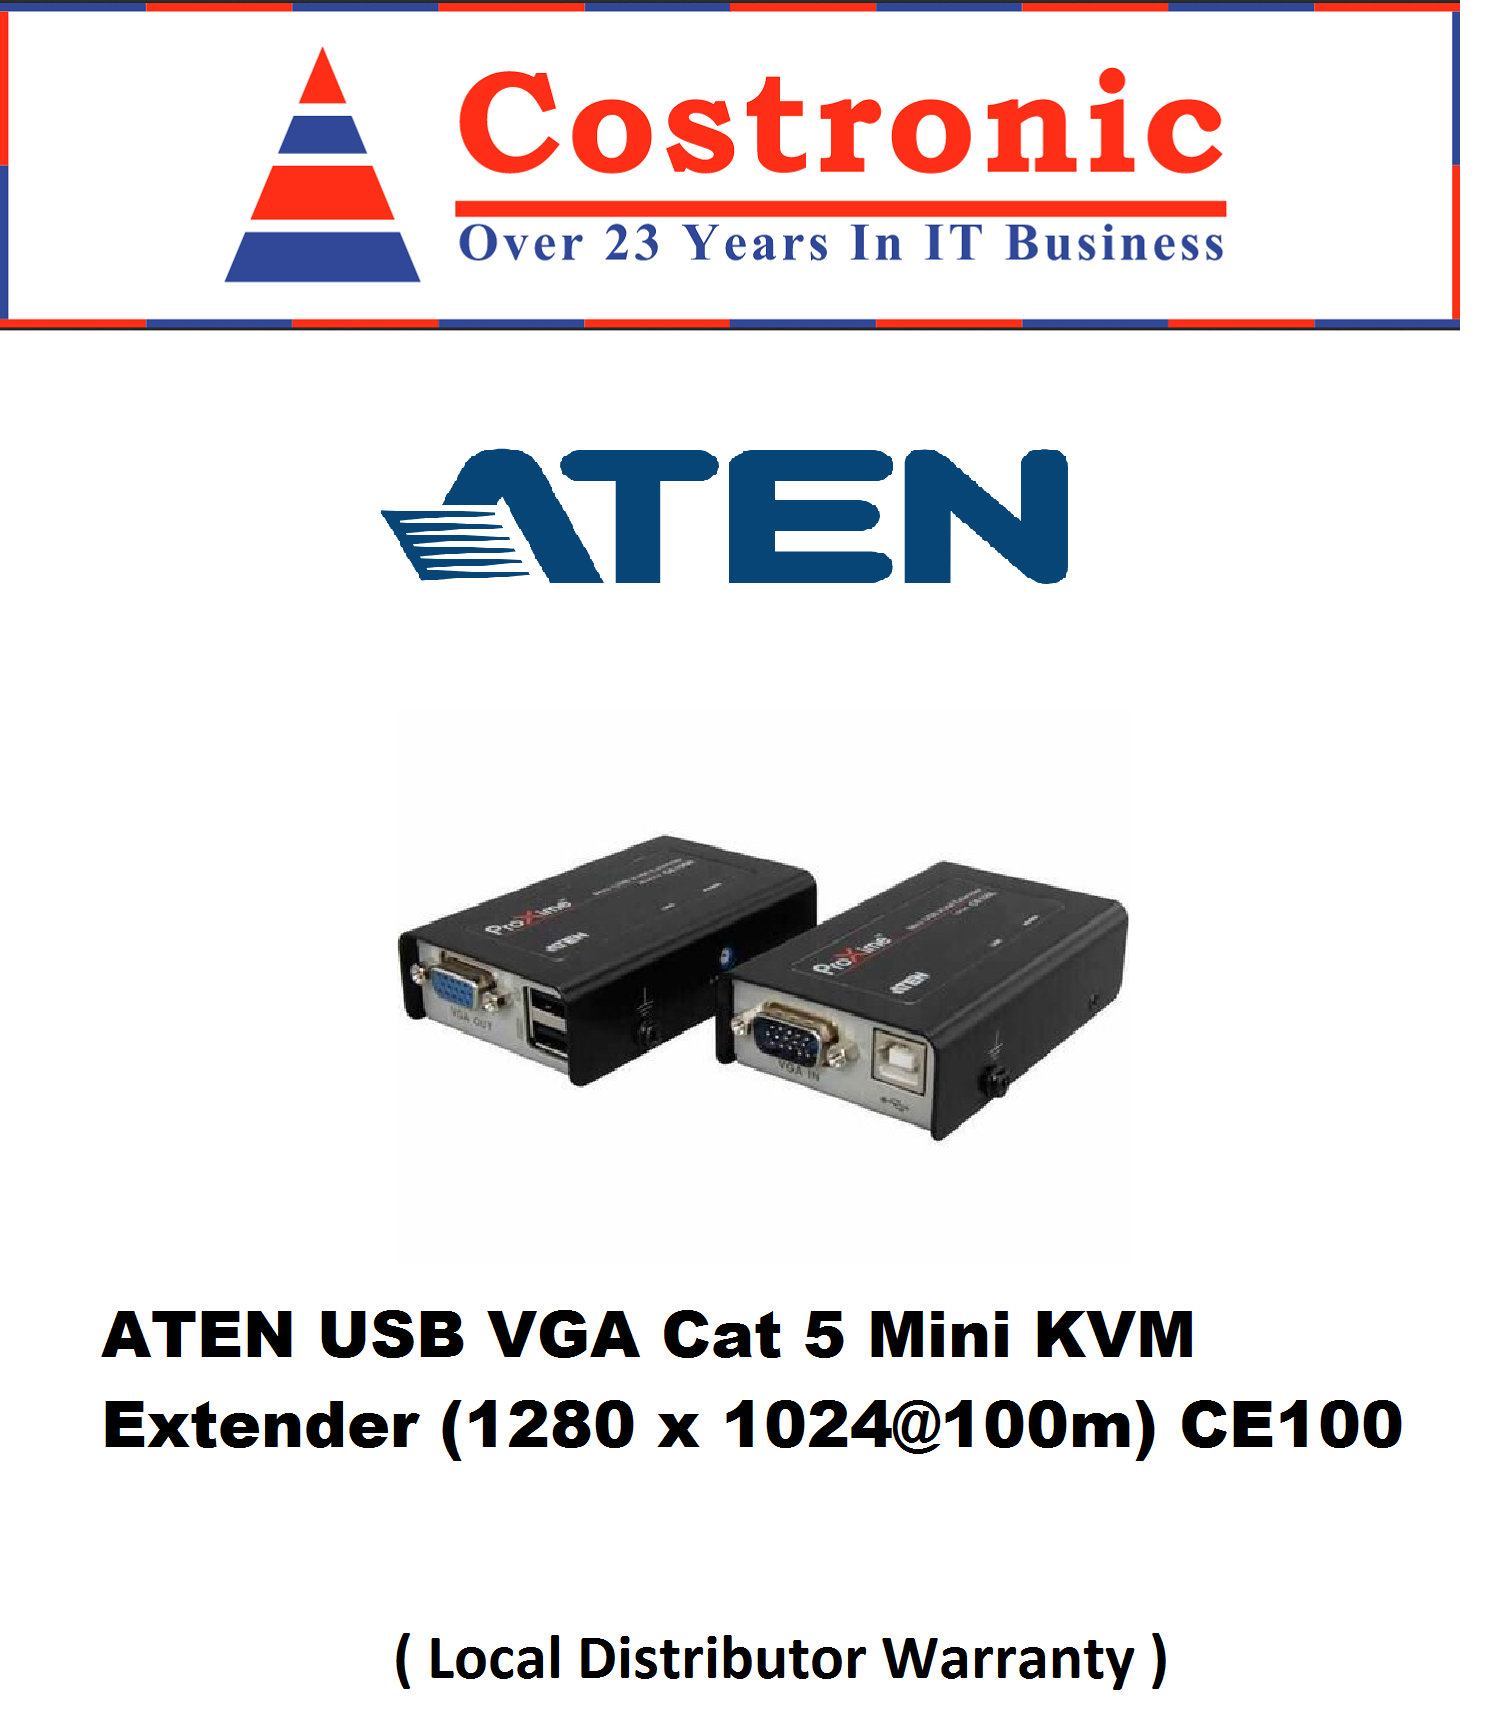 ATEN USB VGA Cat Mini KVM Extender CE100 Lazada Singapore